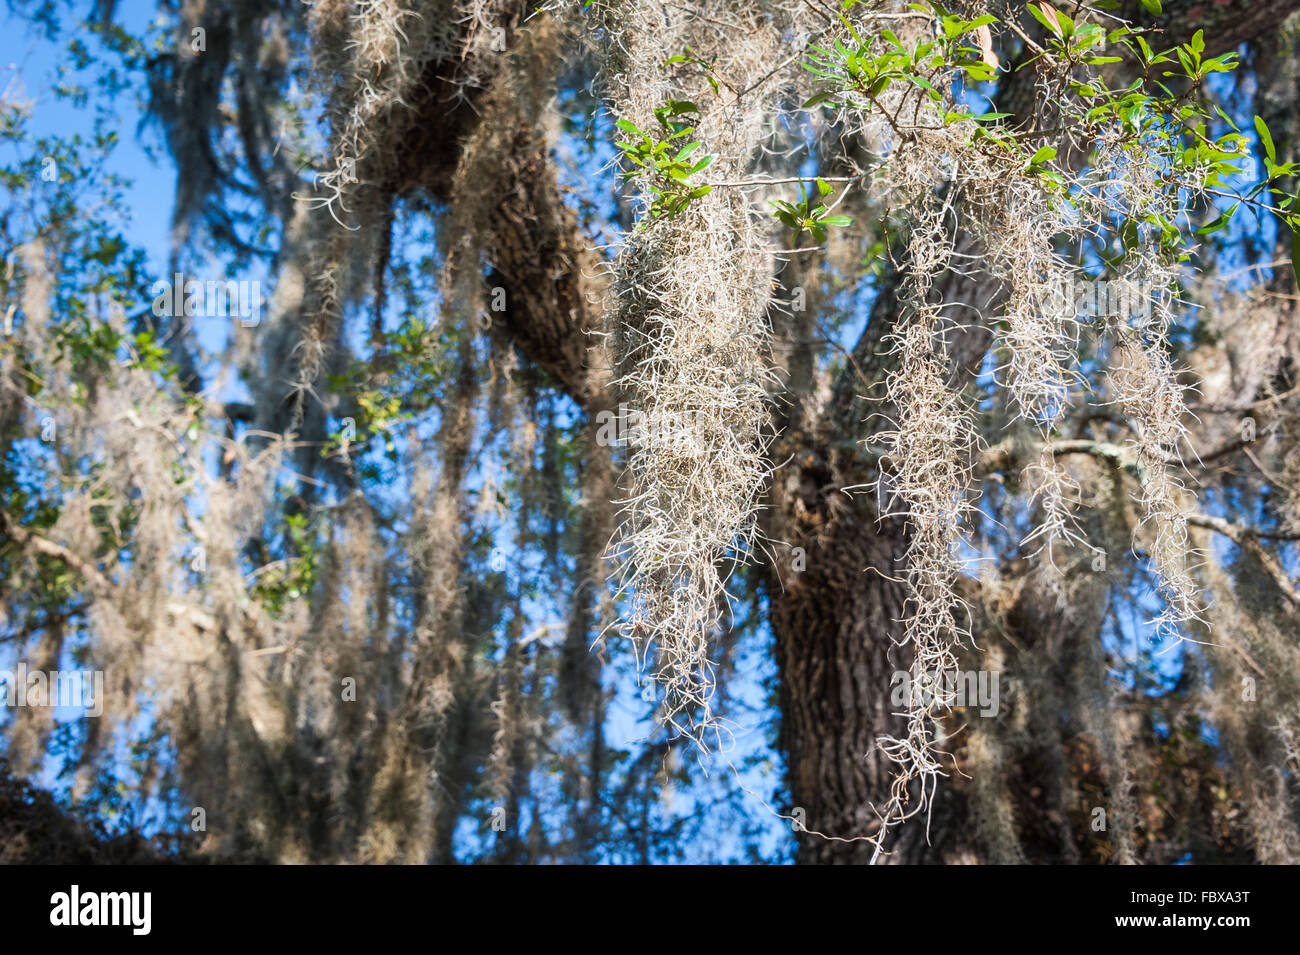 Spanish Moss hängen von einem Baum südliche Phaseneiche in Ponte Vedra Beach, Florida. Stockfoto